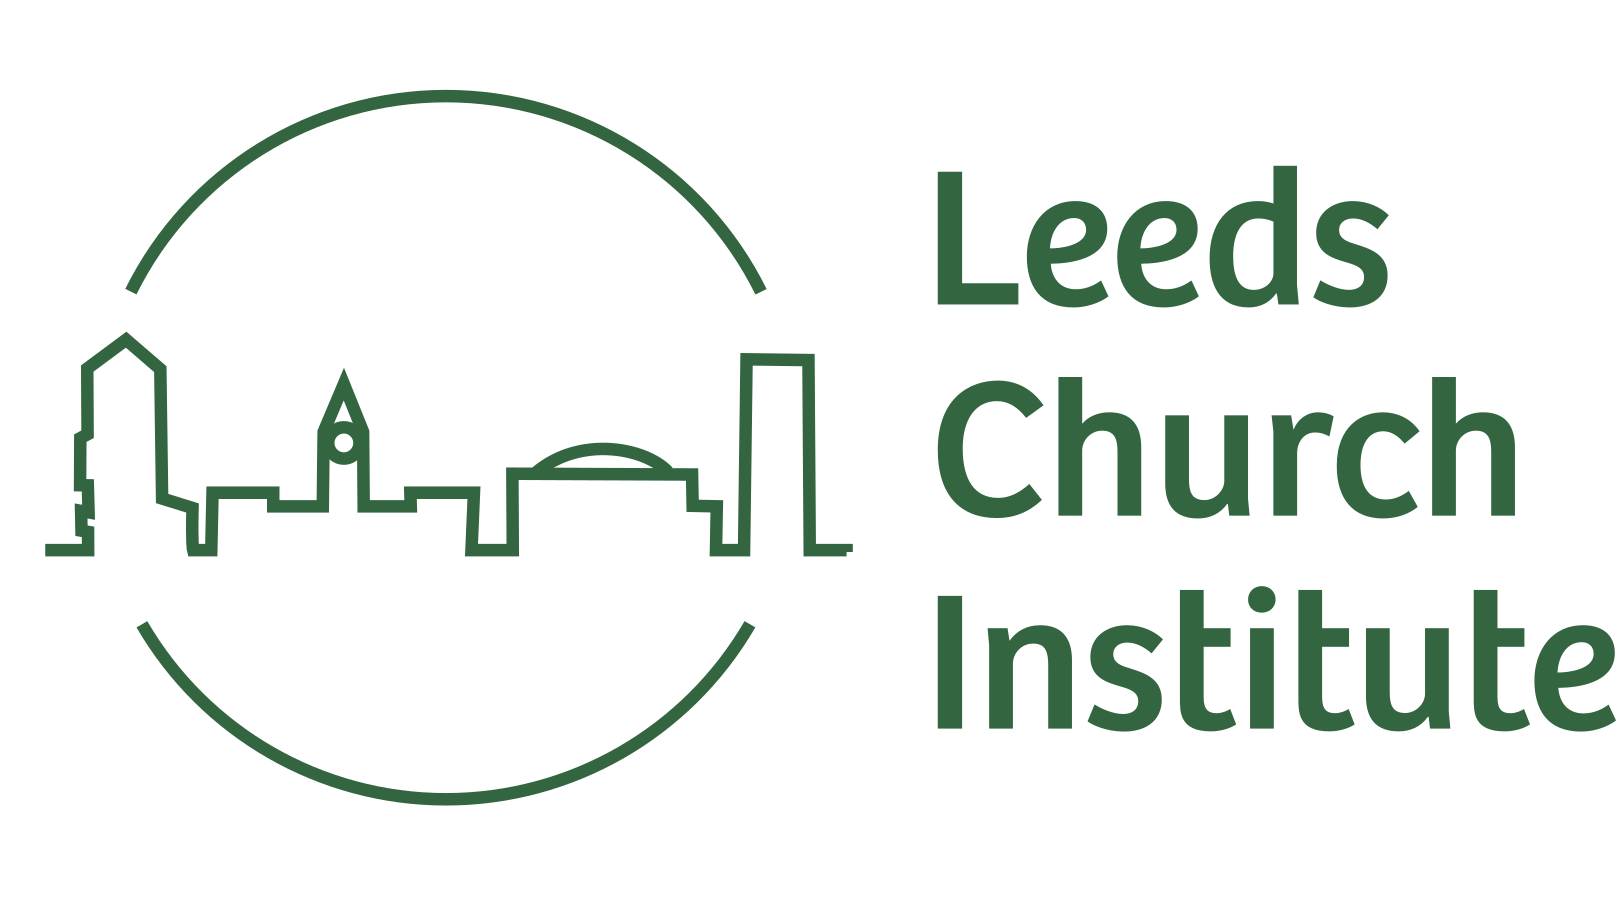 Leeds Church Institute